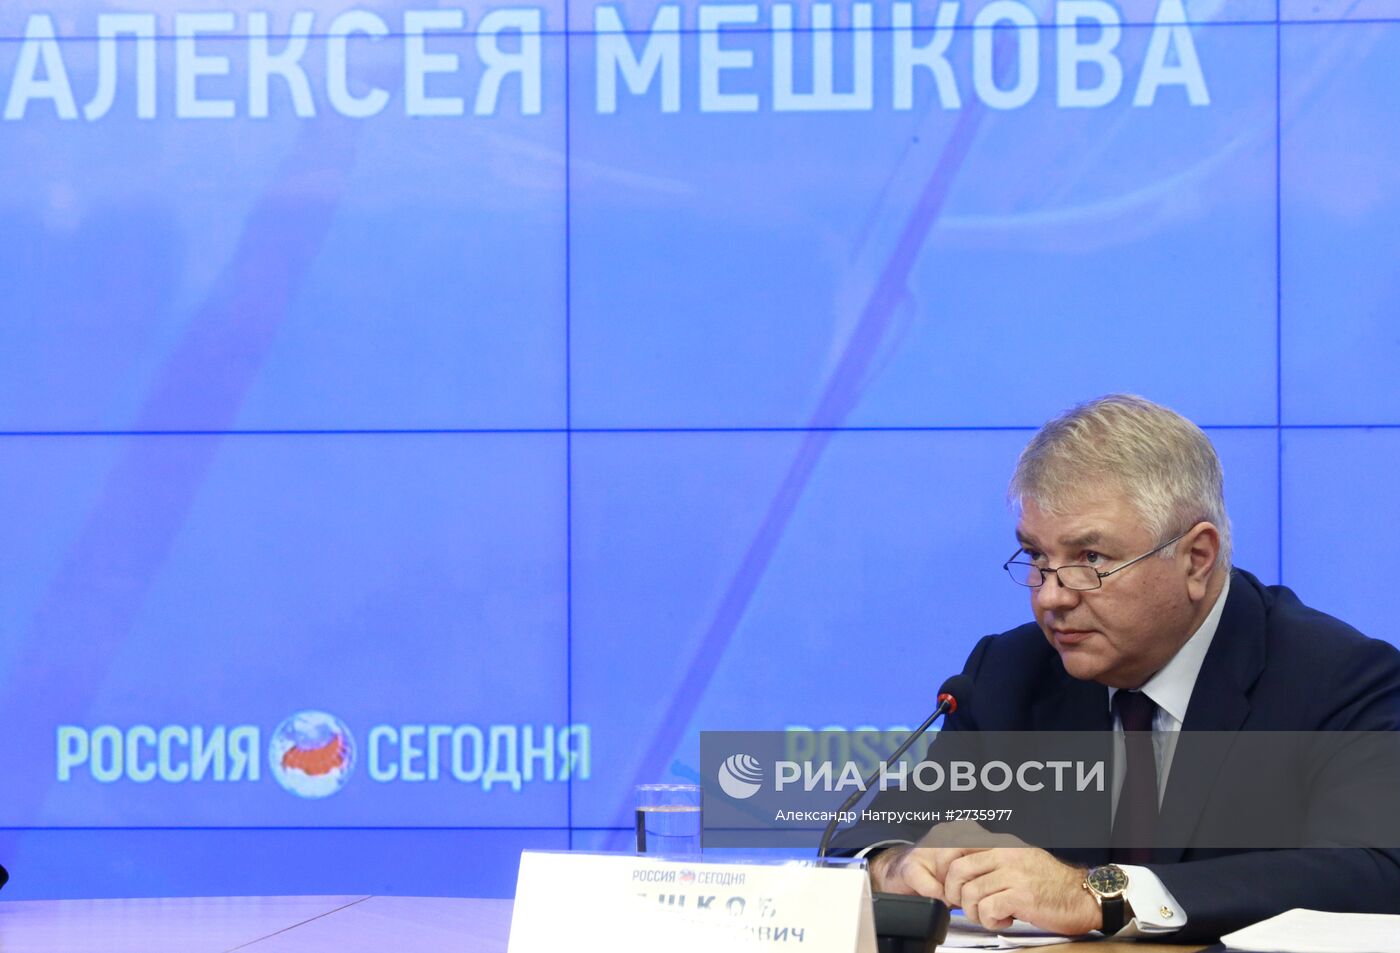 Пресс-конференция заместителя главы МИД РФ Алексея Мешкова